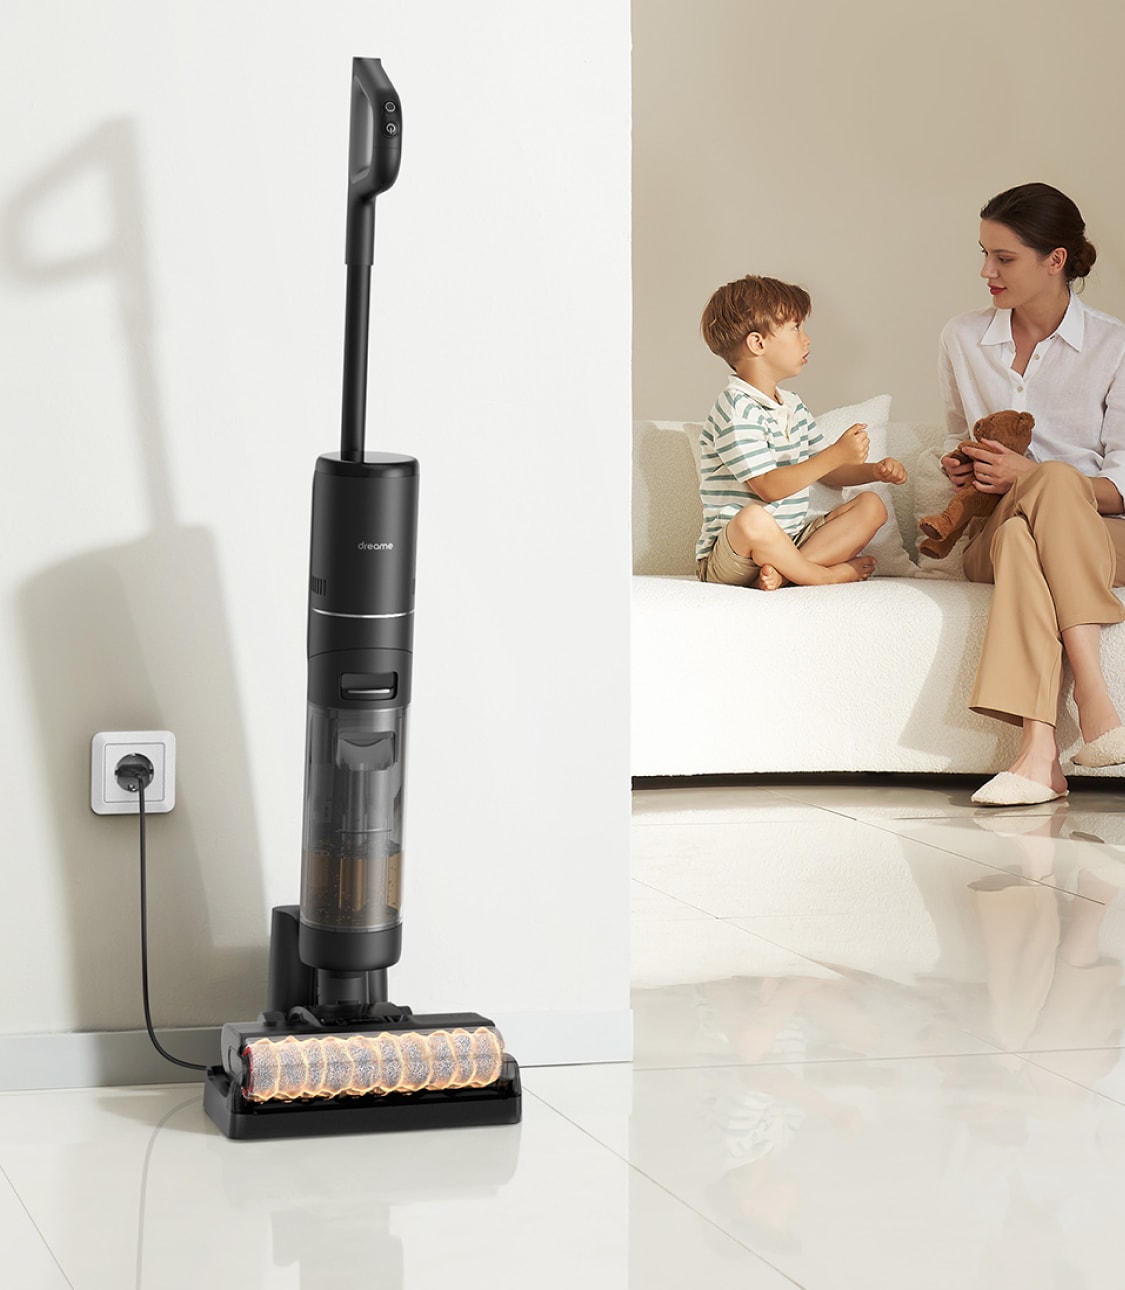 Dreametech H12 Pro review: a more convenient floor cleaner